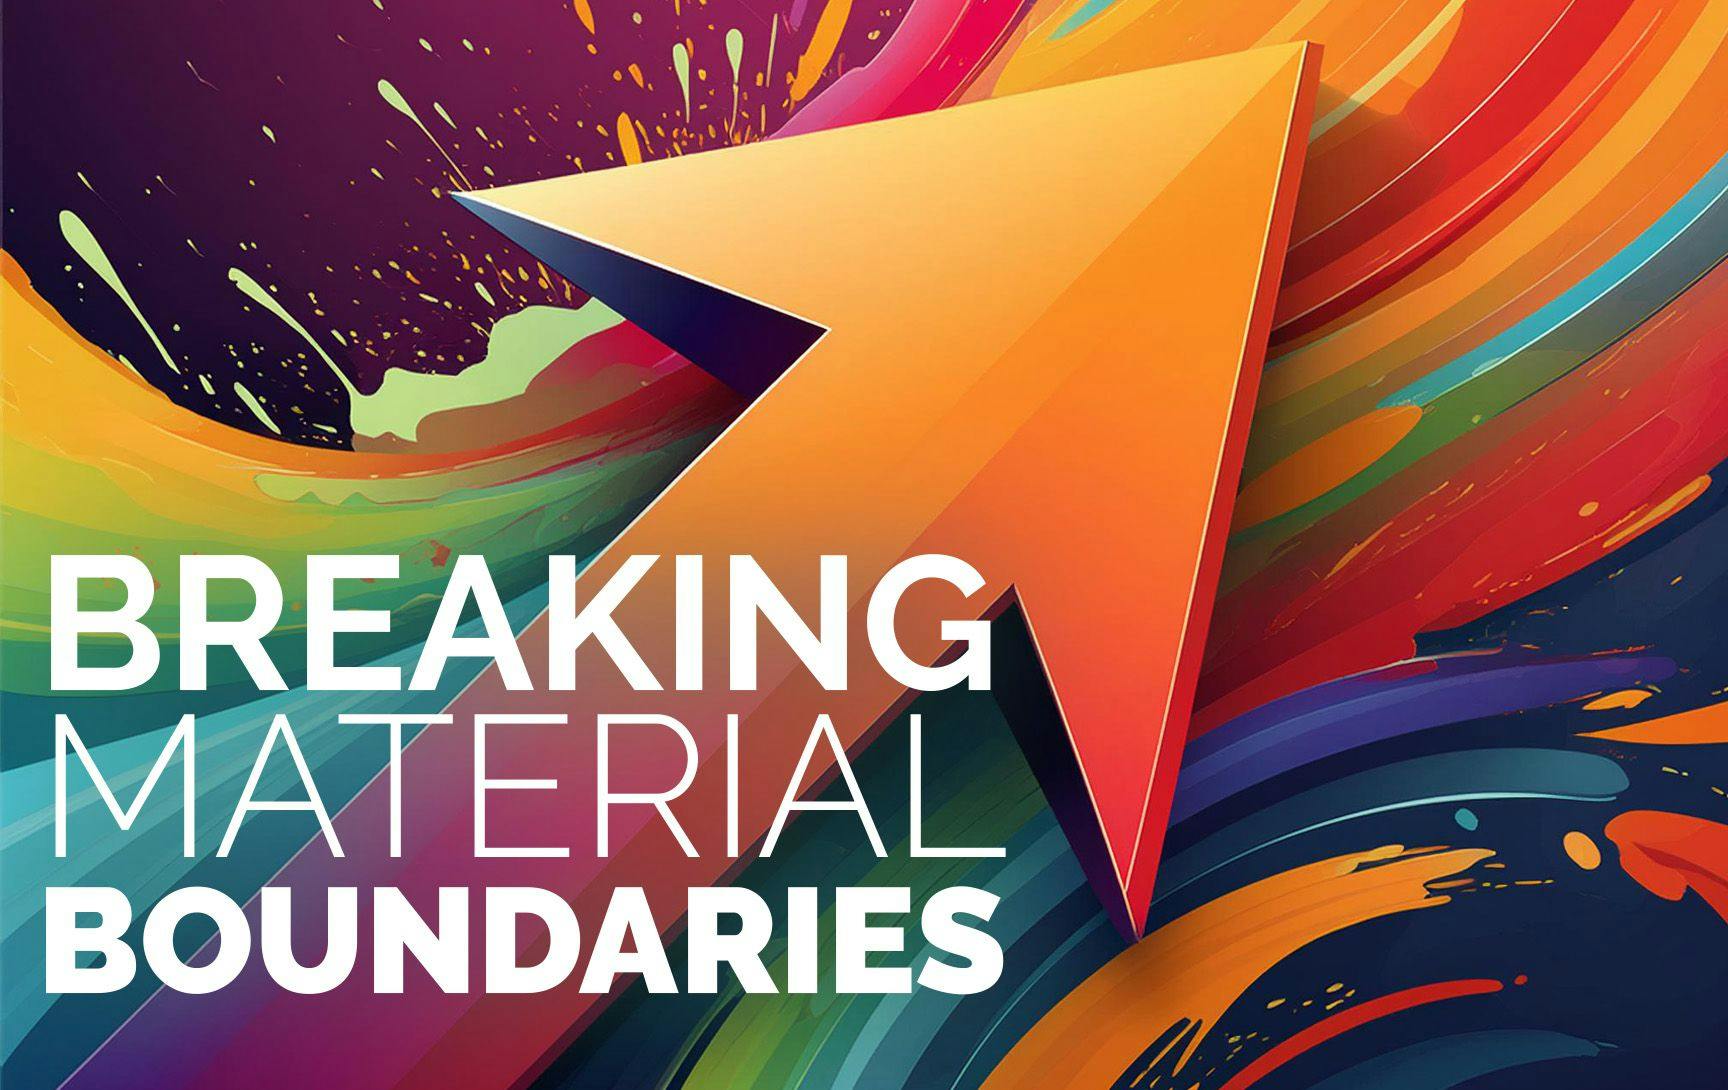 Breaking Material Boundaries | Image by Kristen Morabito / MJH Life Sciences Using AI